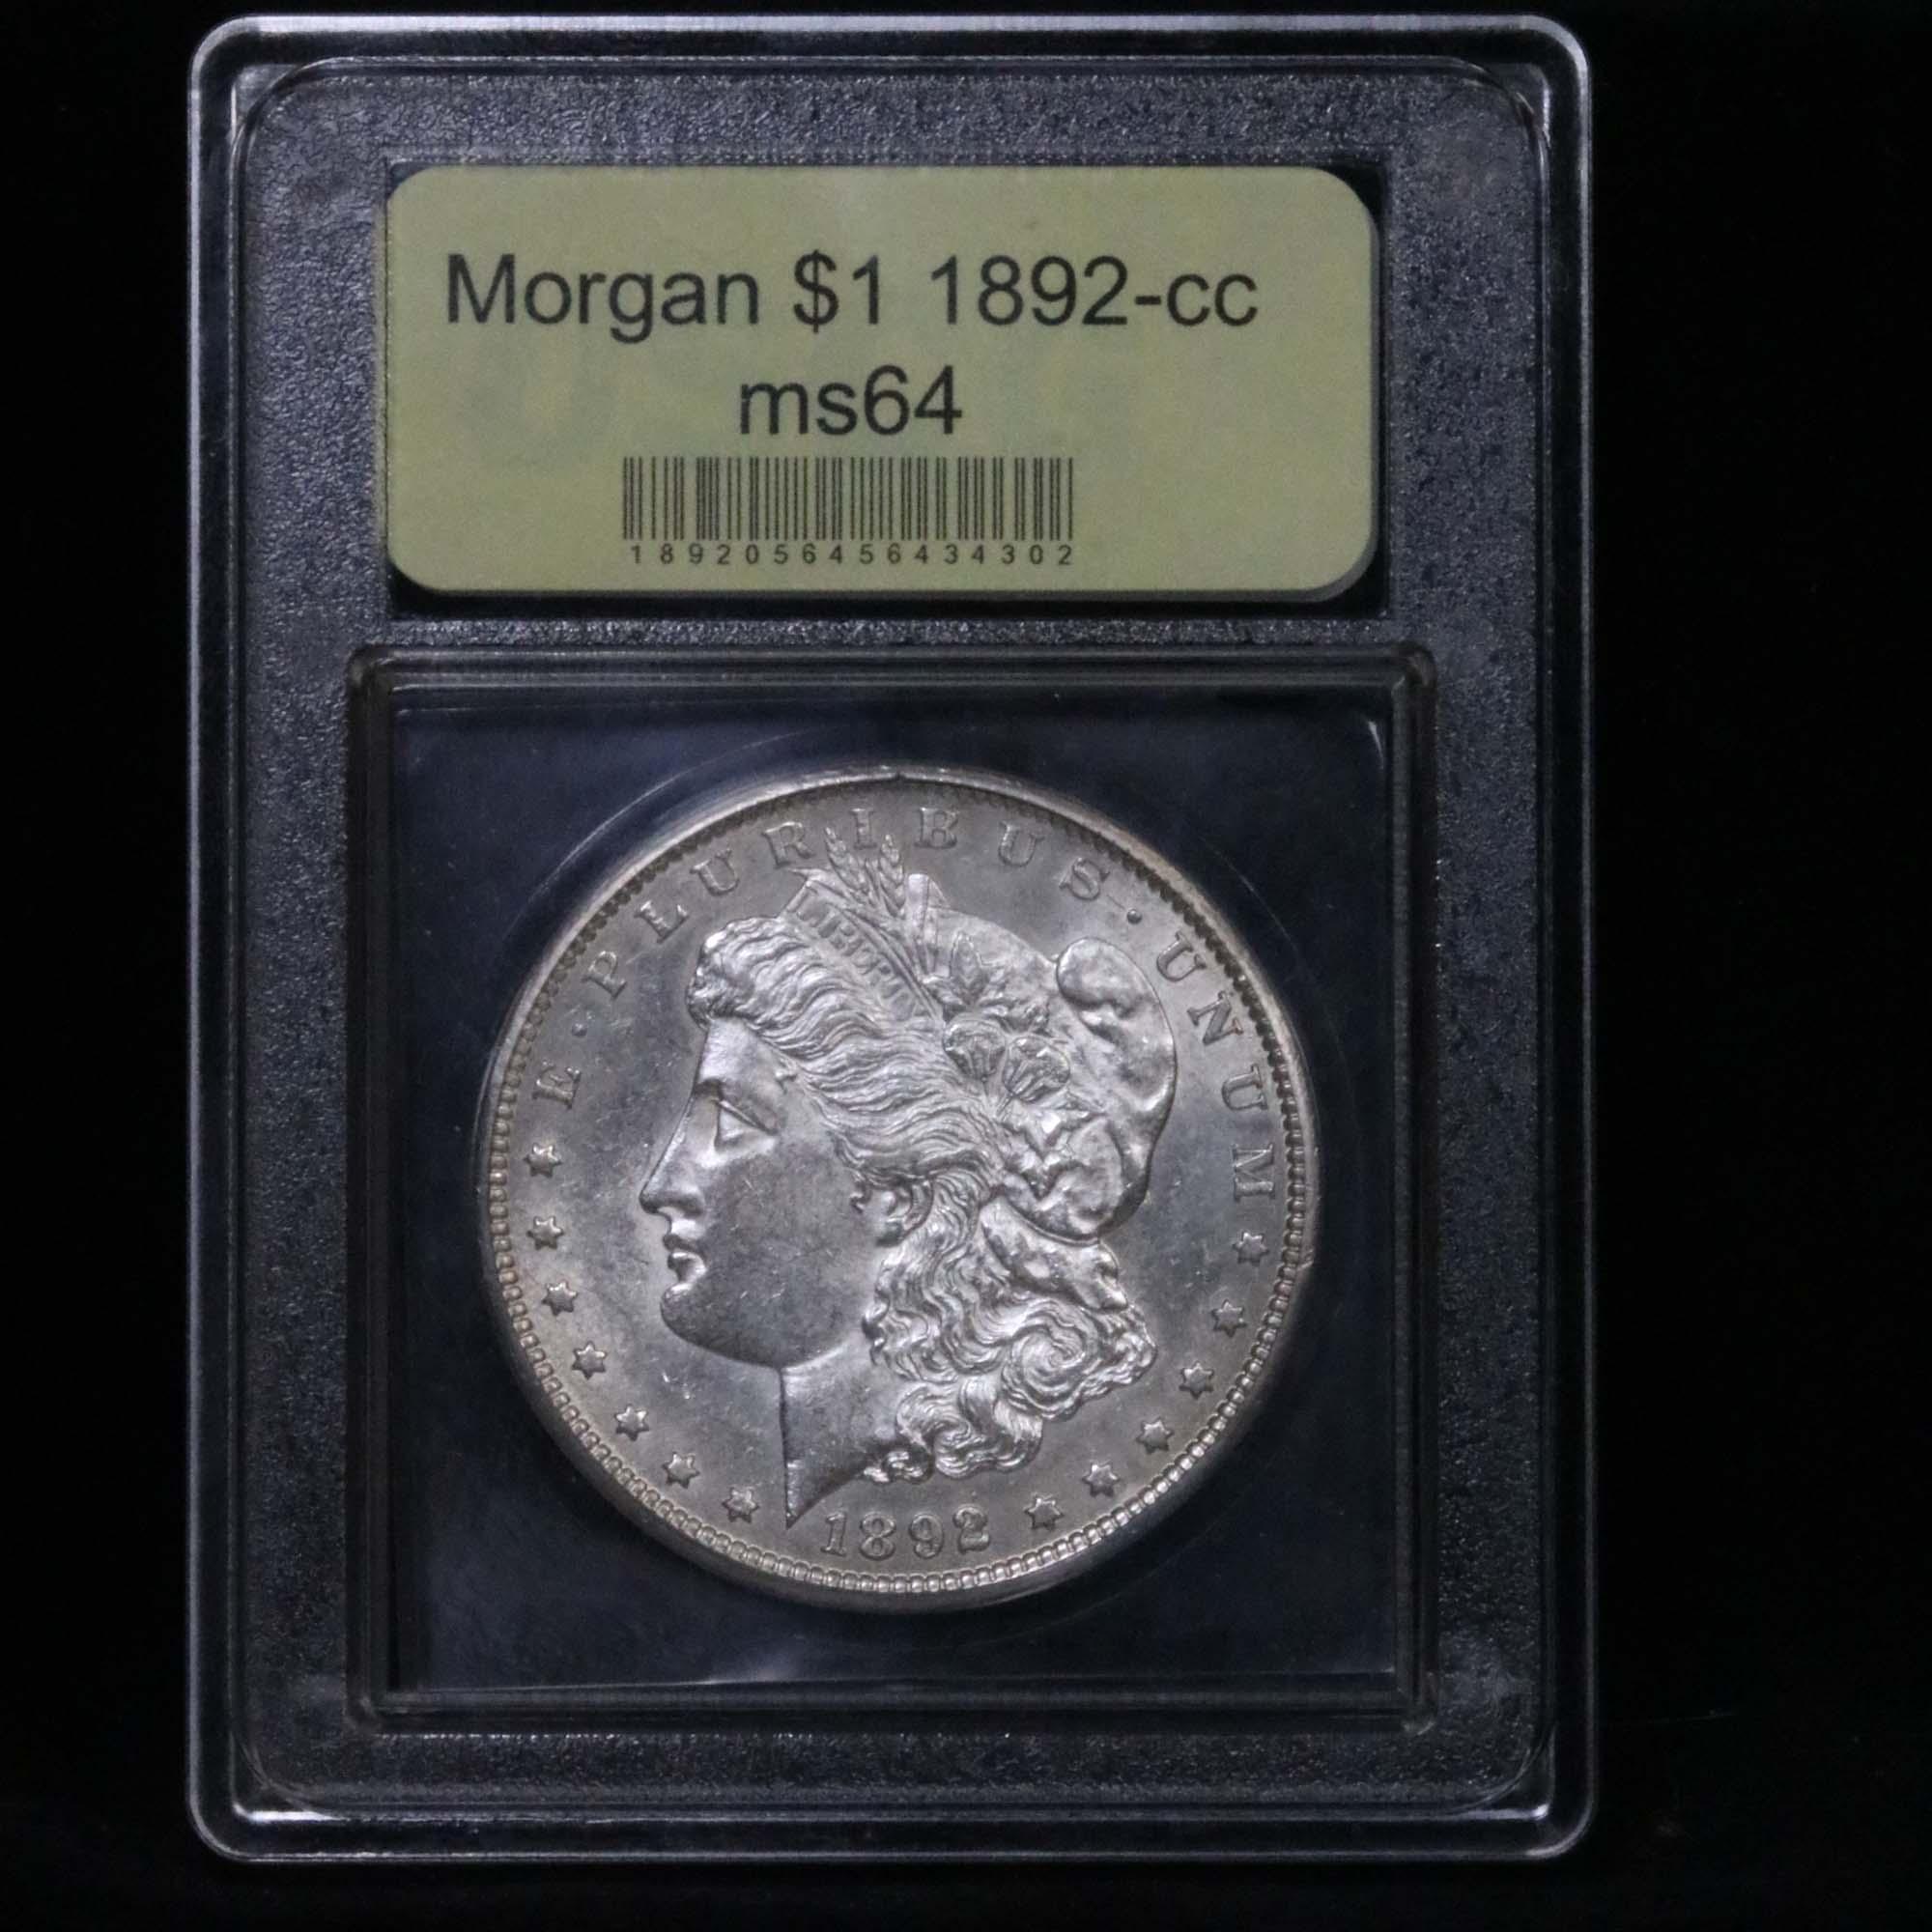 ***Auction Highlight*** 1892-cc Morgan Dollar $1 Graded Choice Unc by USCG (fc)